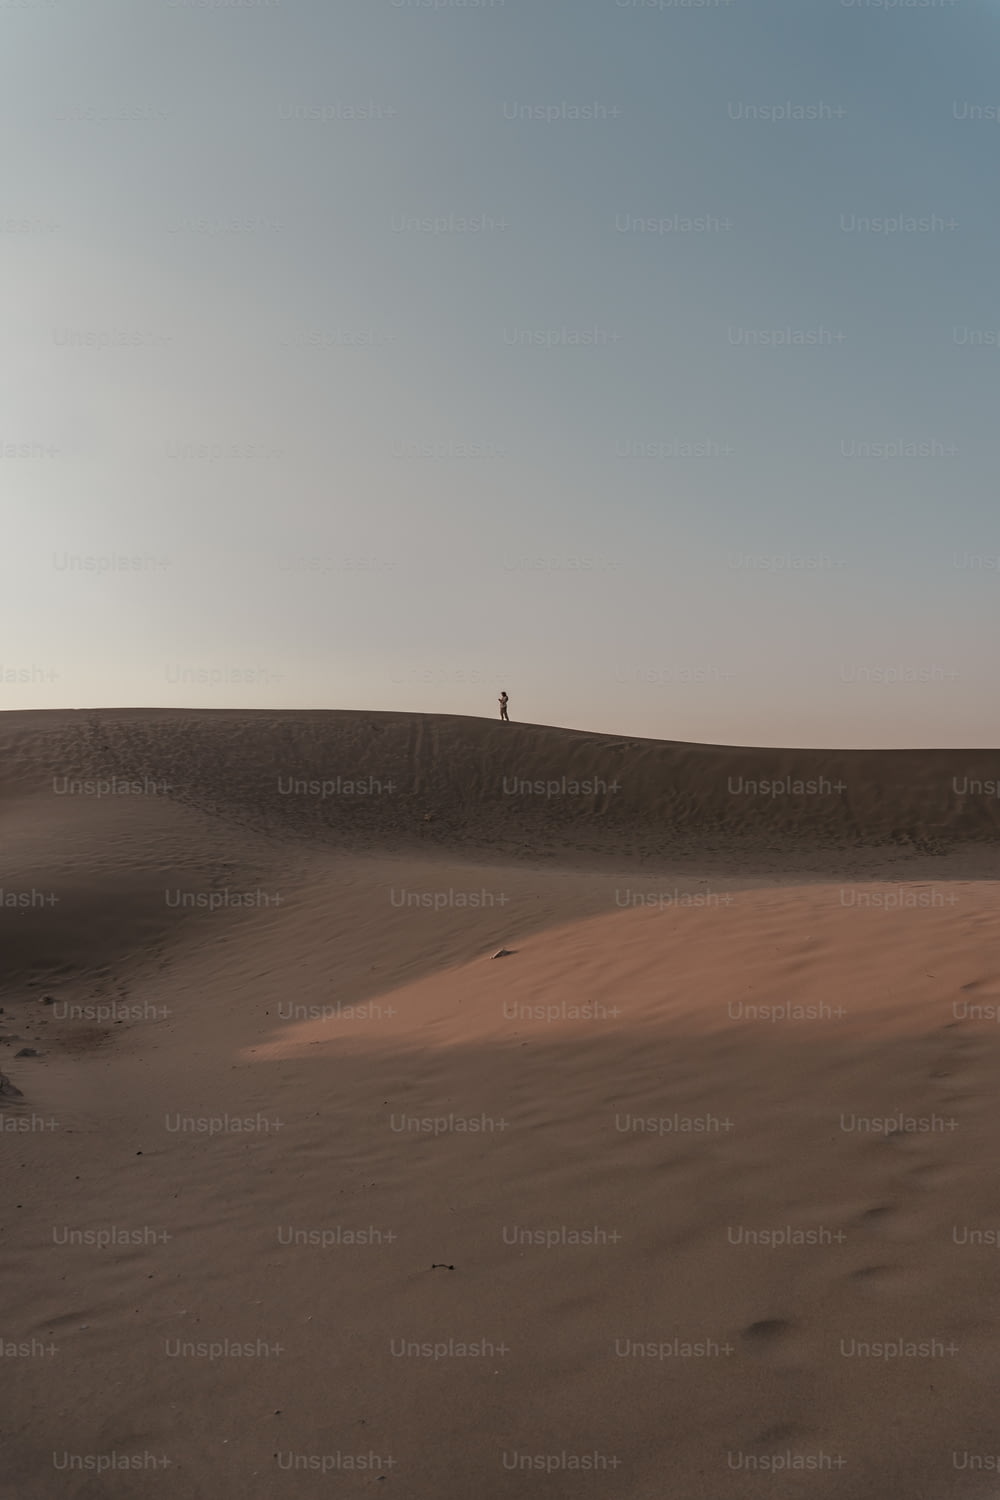 Una persona parada en la cima de una duna de arena